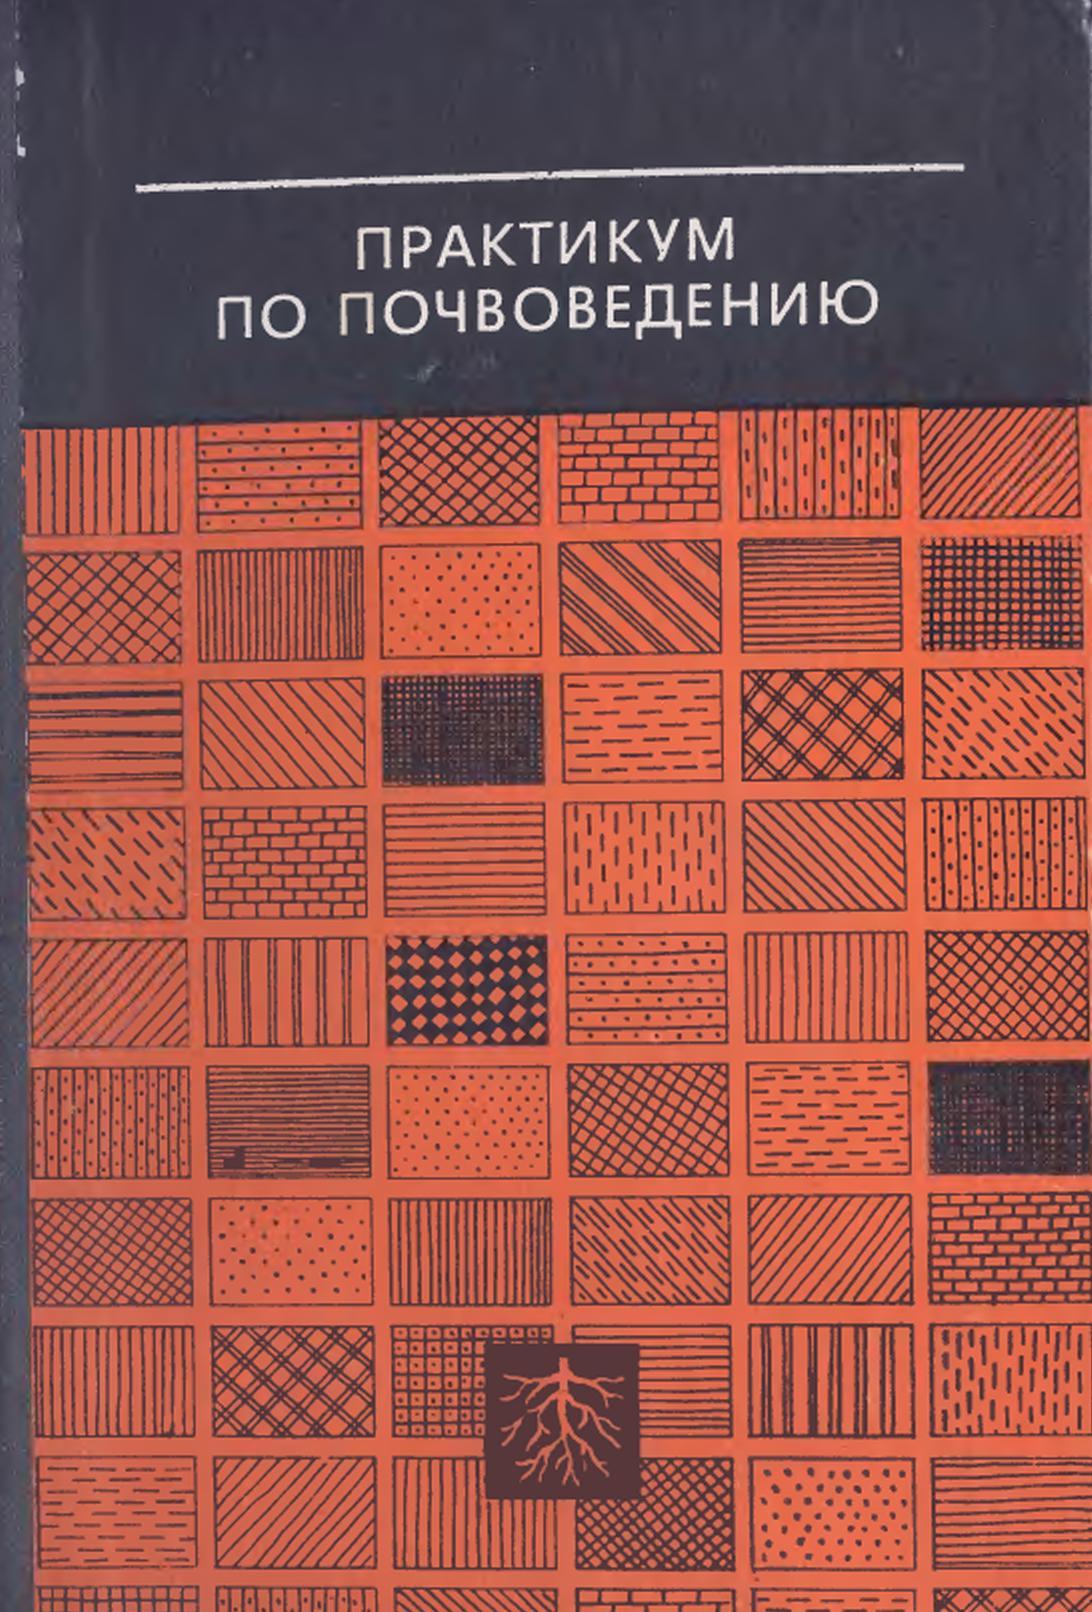 Практикум по почвоведению, Кауричев И.С., 1980